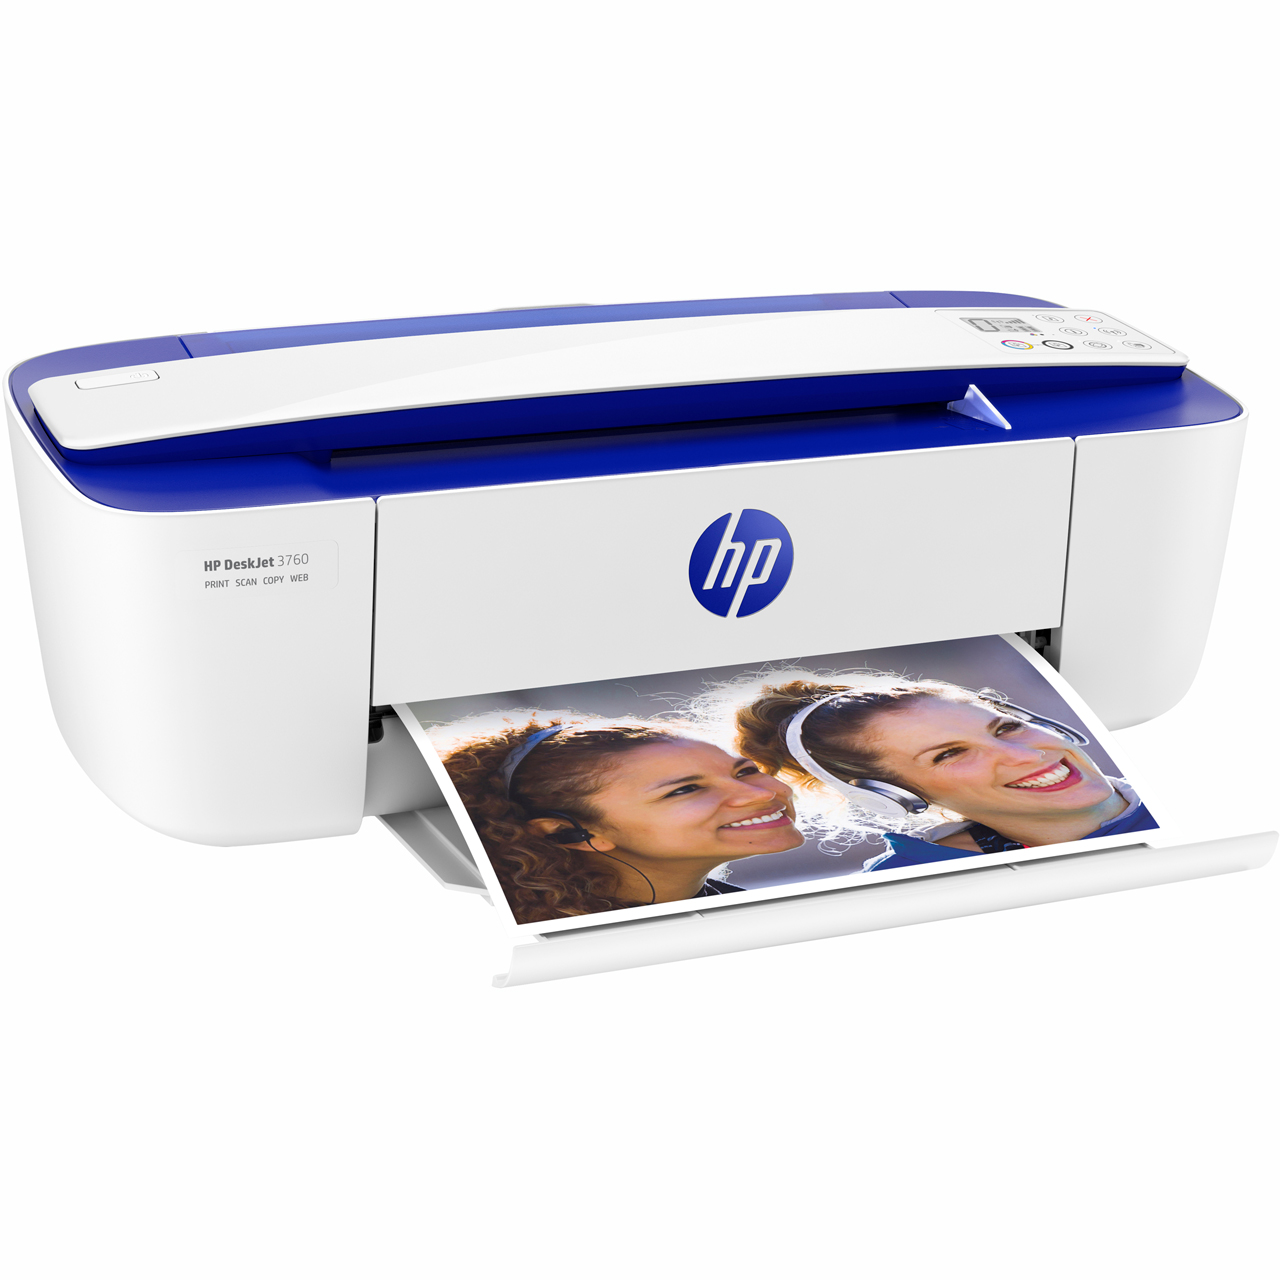 HP Tech Data Deskjet 3760 Inkjet Printer Blue / White 193015105355 | eBay